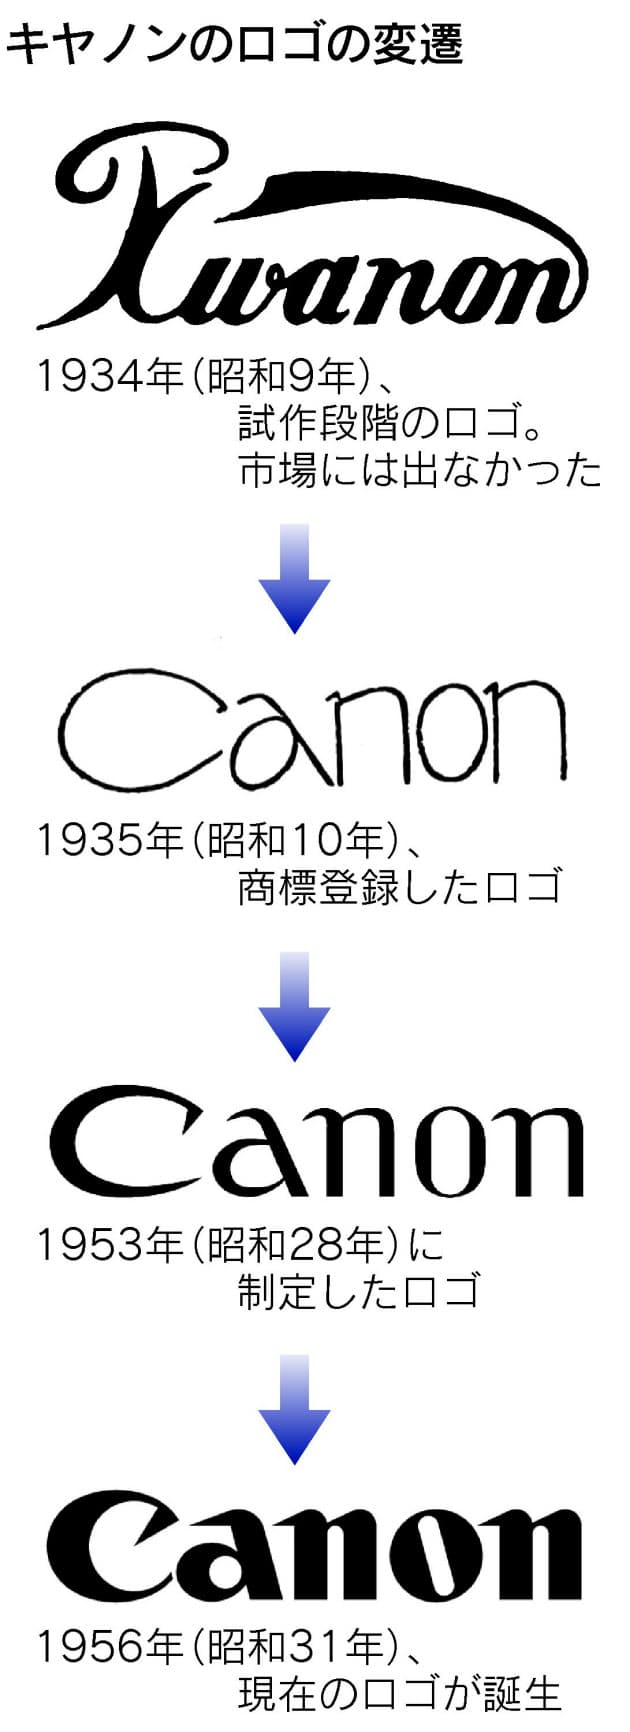 キヤノンのルーツは 観音様 花王の月マーク 昔は右向き キヤノンに幻のロゴ Nikkei Style